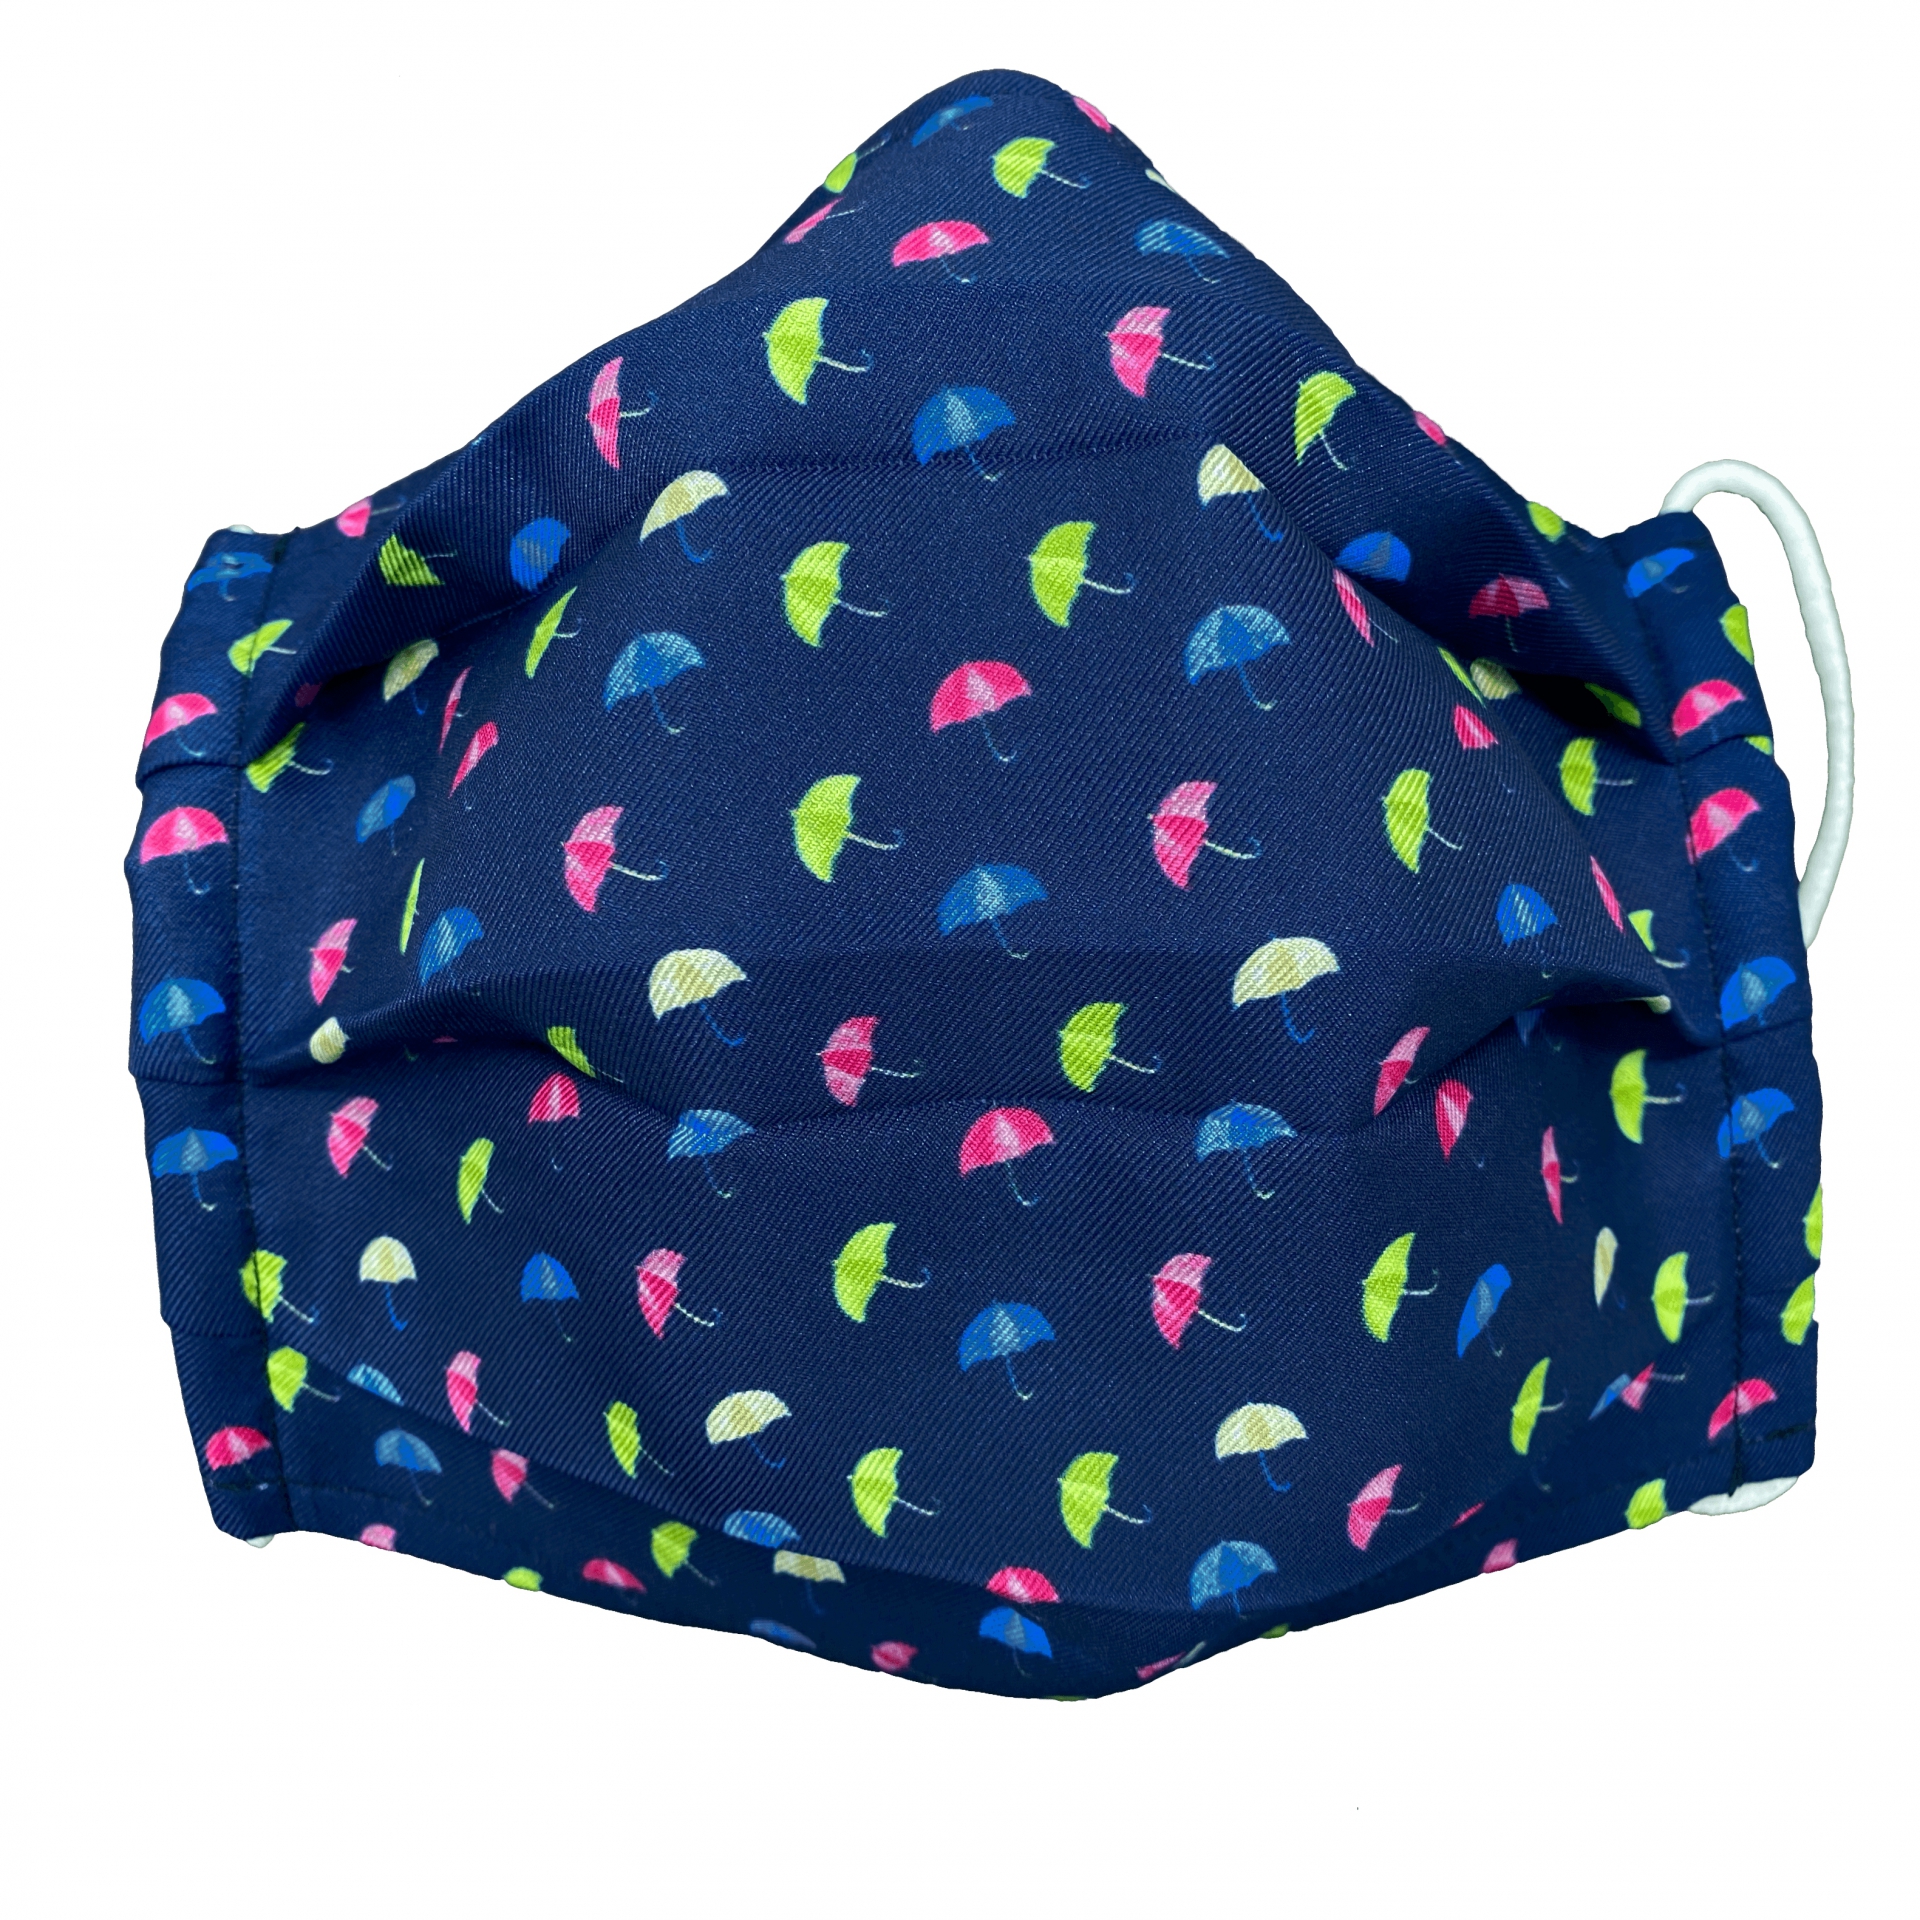 StyleMask Mascherina copri viso per bambino, filtrante blu fantasia ombrelloni